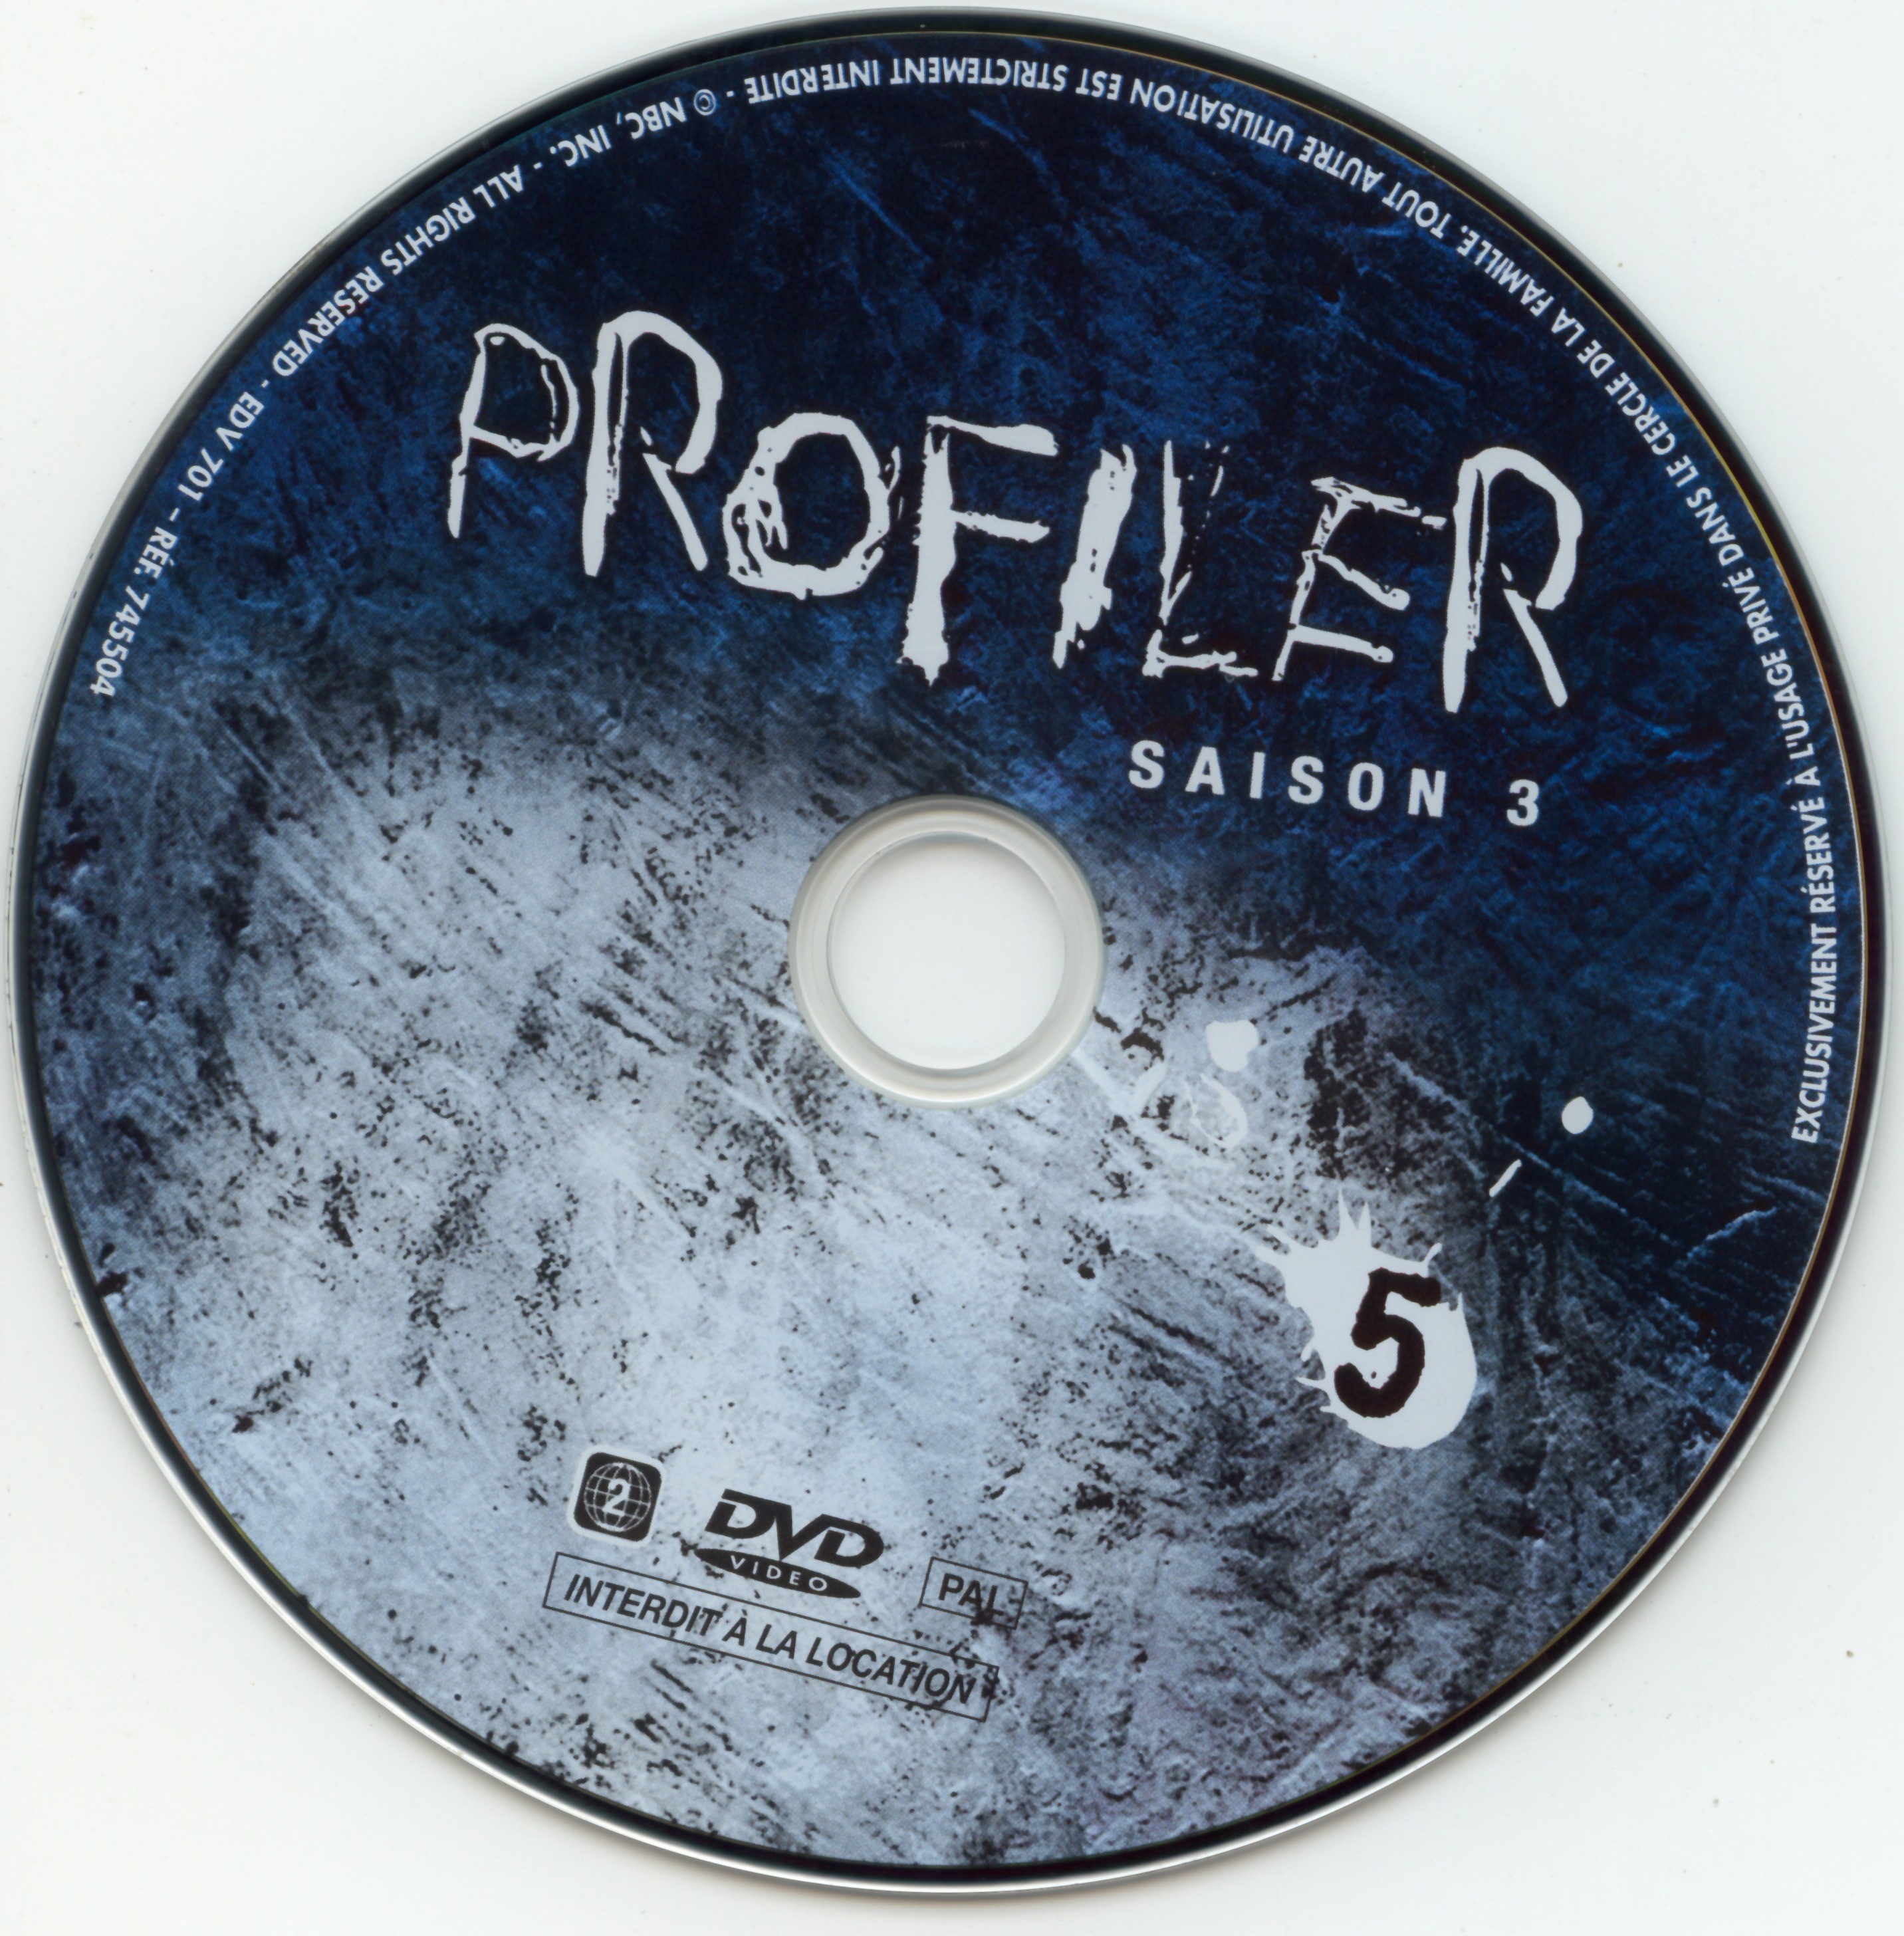 Profiler saison 3 DVD 5